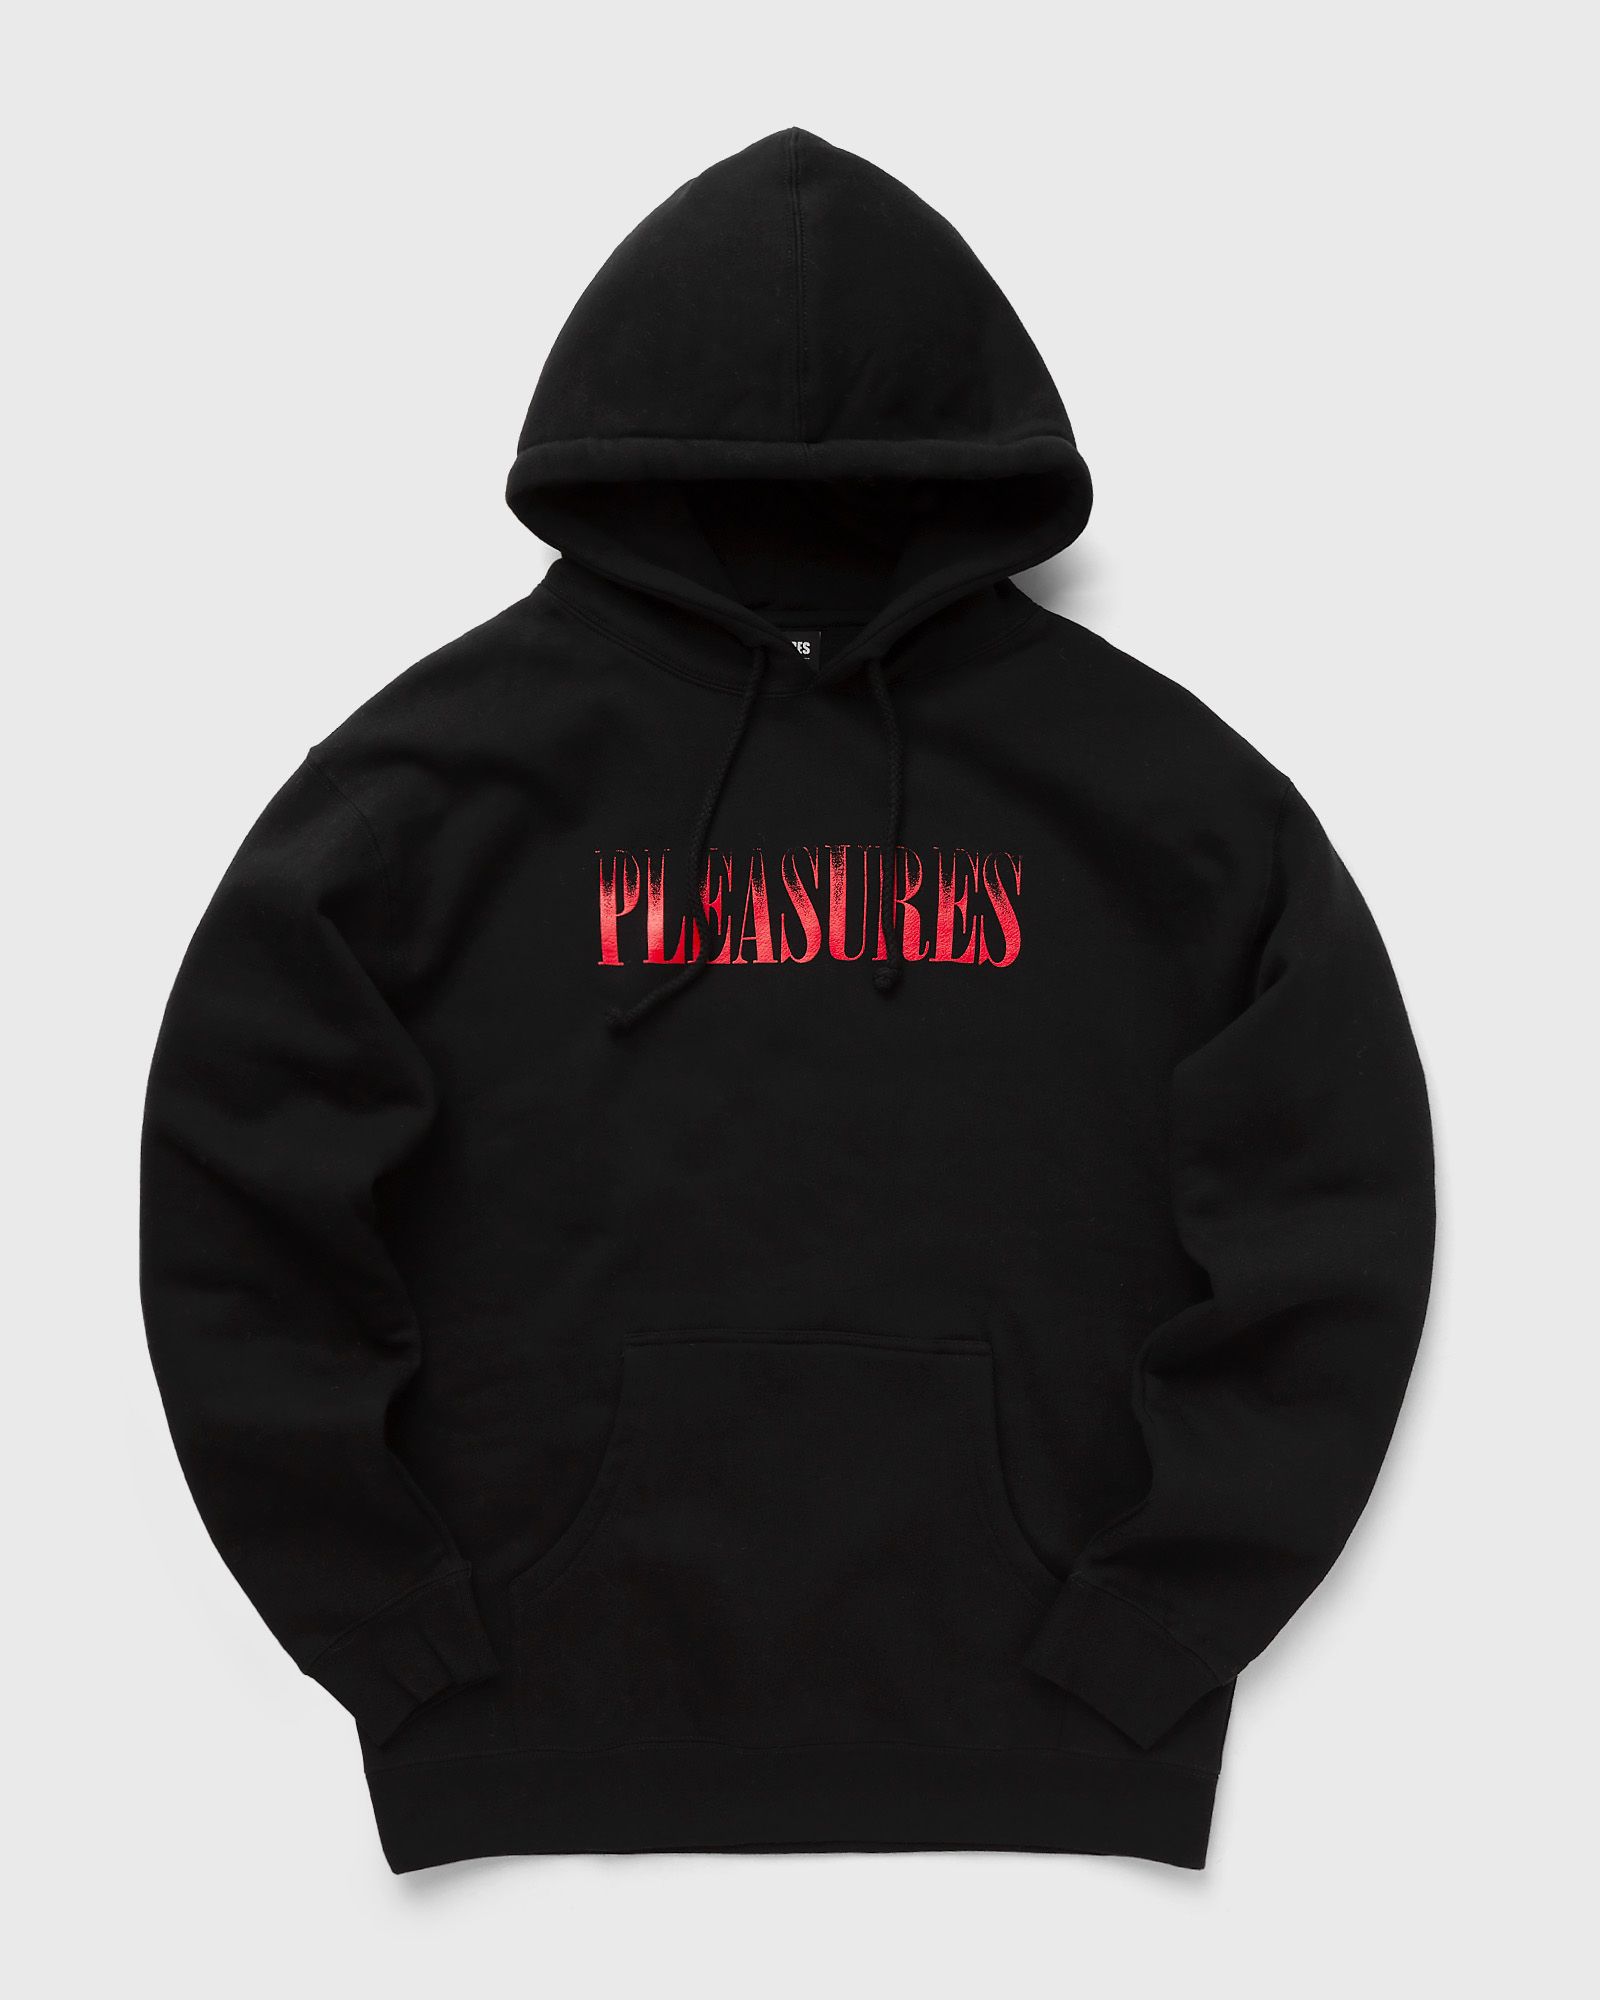 Pleasures - crumble hoodie men hoodies black in größe:xl